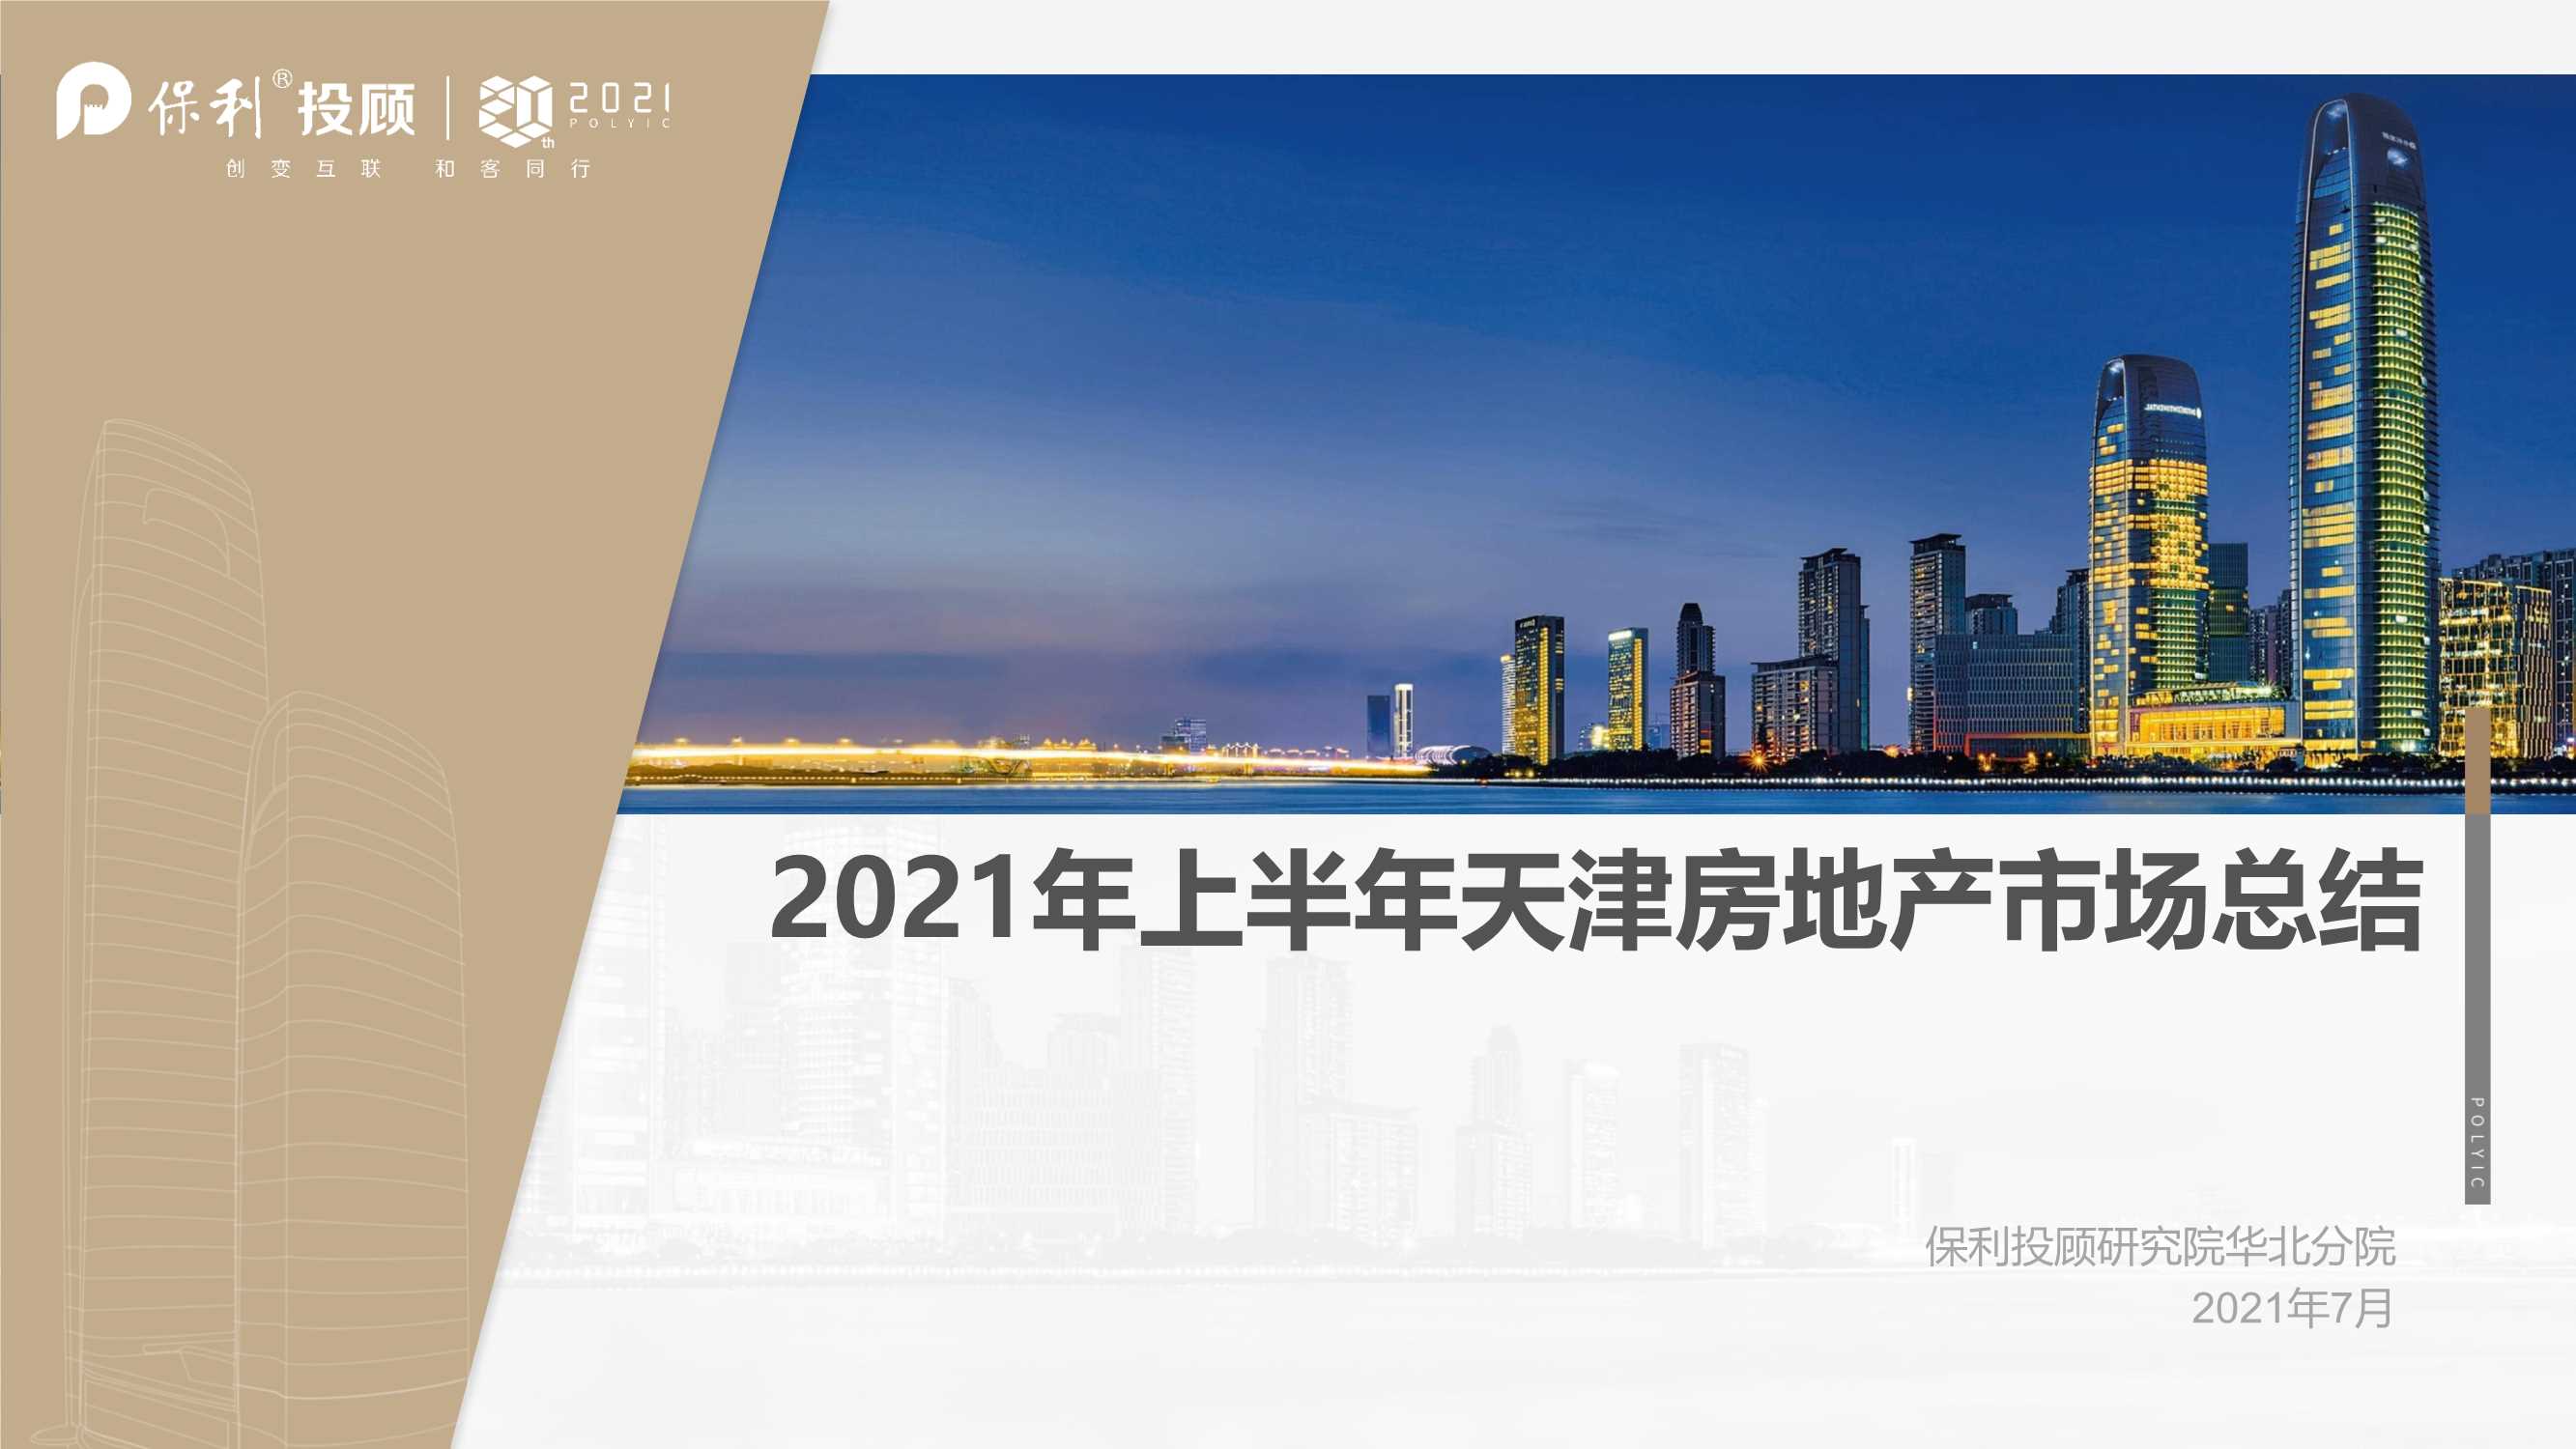 保利投顾研究院-2021年天津房地产市场半年报-2021.07-83页